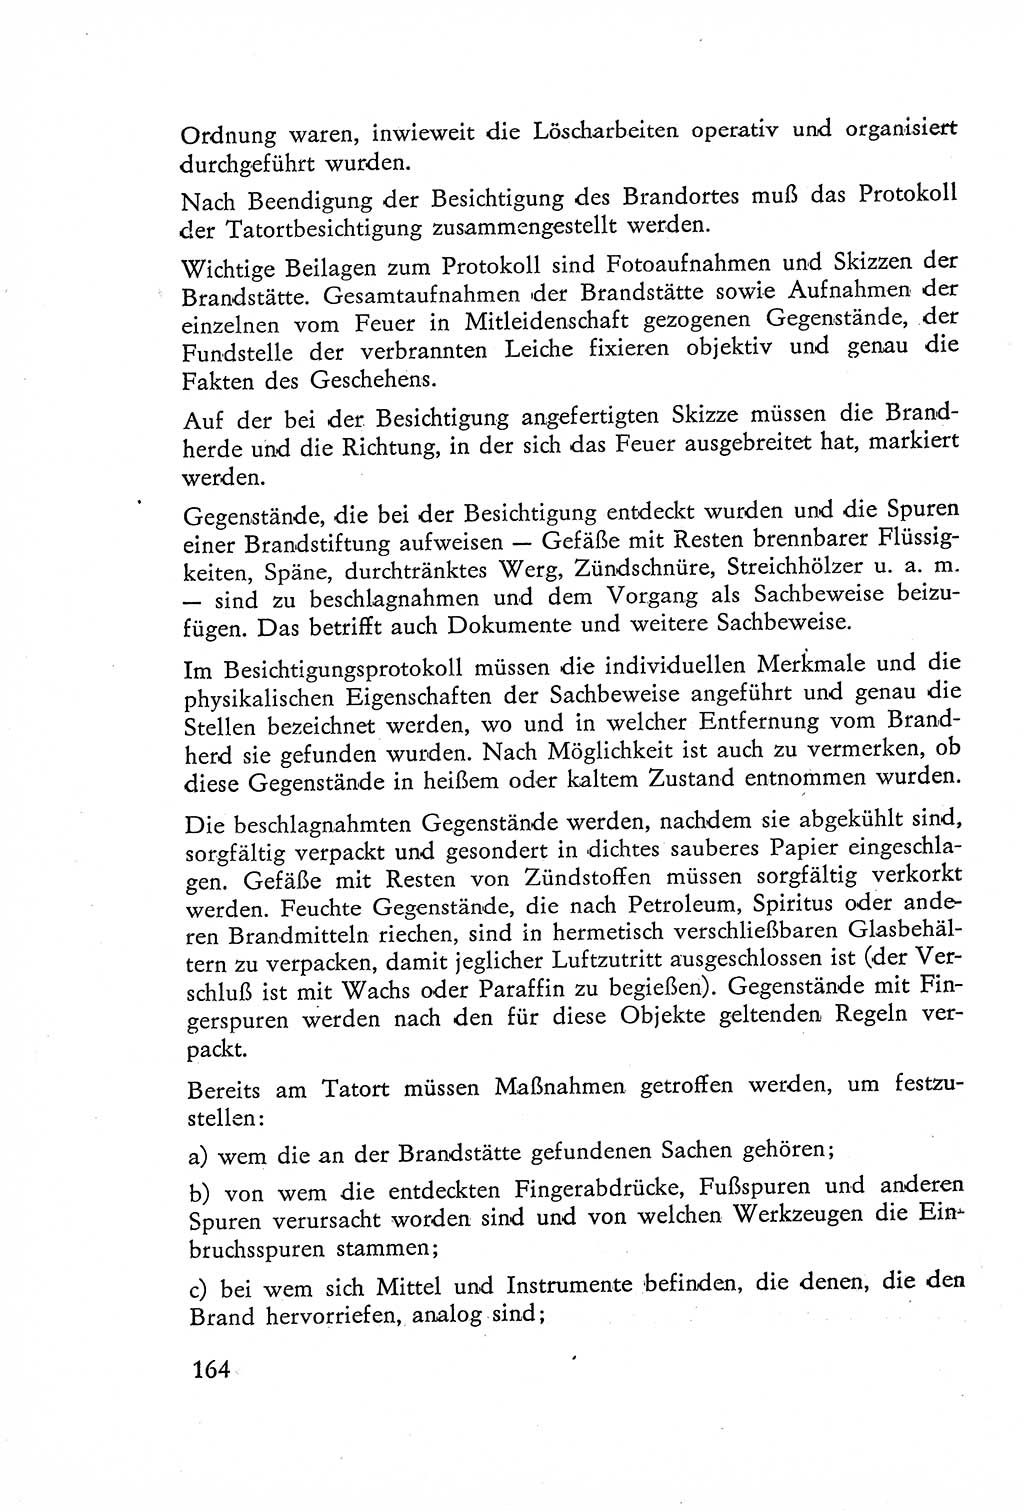 Die Untersuchung einzelner Verbrechensarten [Deutsche Demokratische Republik (DDR)] 1960, Seite 164 (Unters. Verbr.-Art. DDR 1960, S. 164)